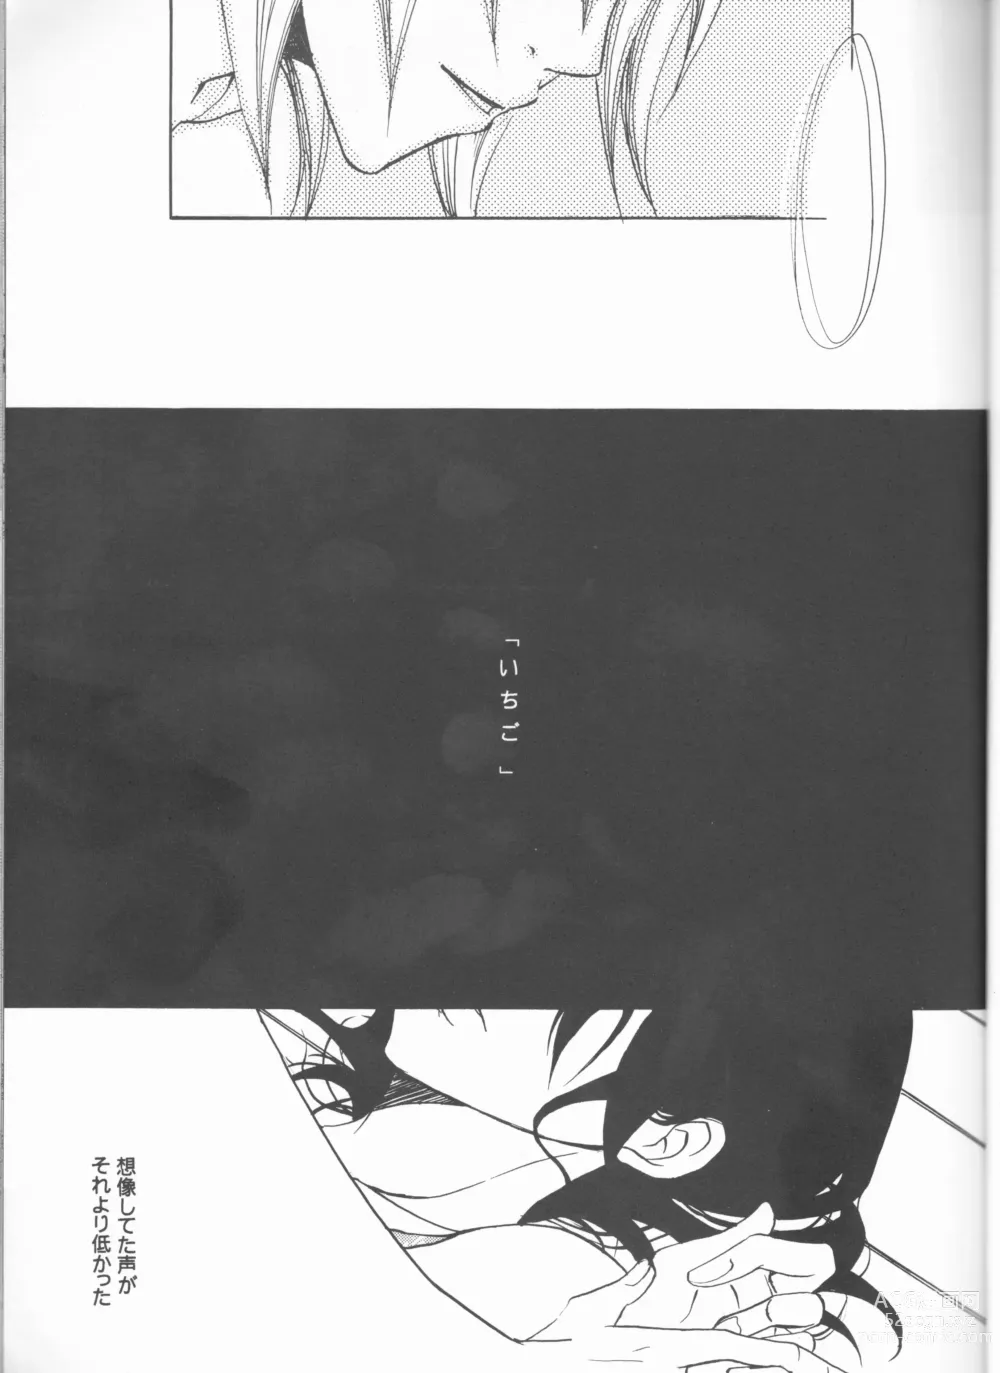 Page 23 of doujinshi Kimi o suki ni natte hajimete no natsu ga kuru.